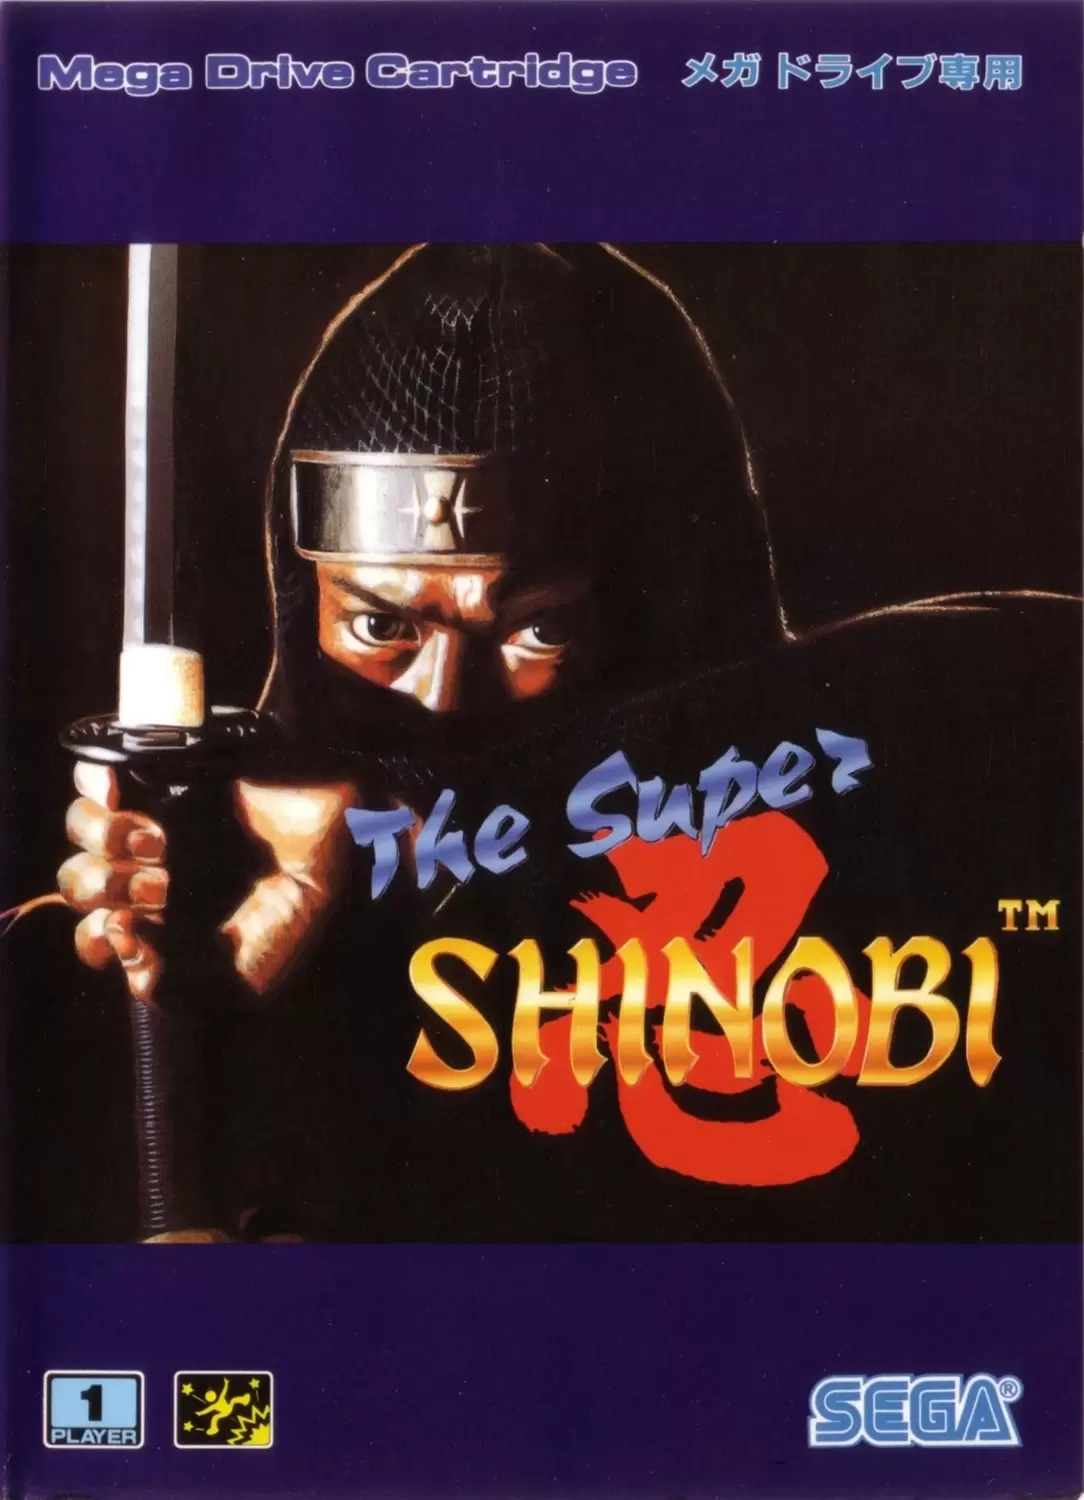 Sega Genesis Games - The Super Shinobi